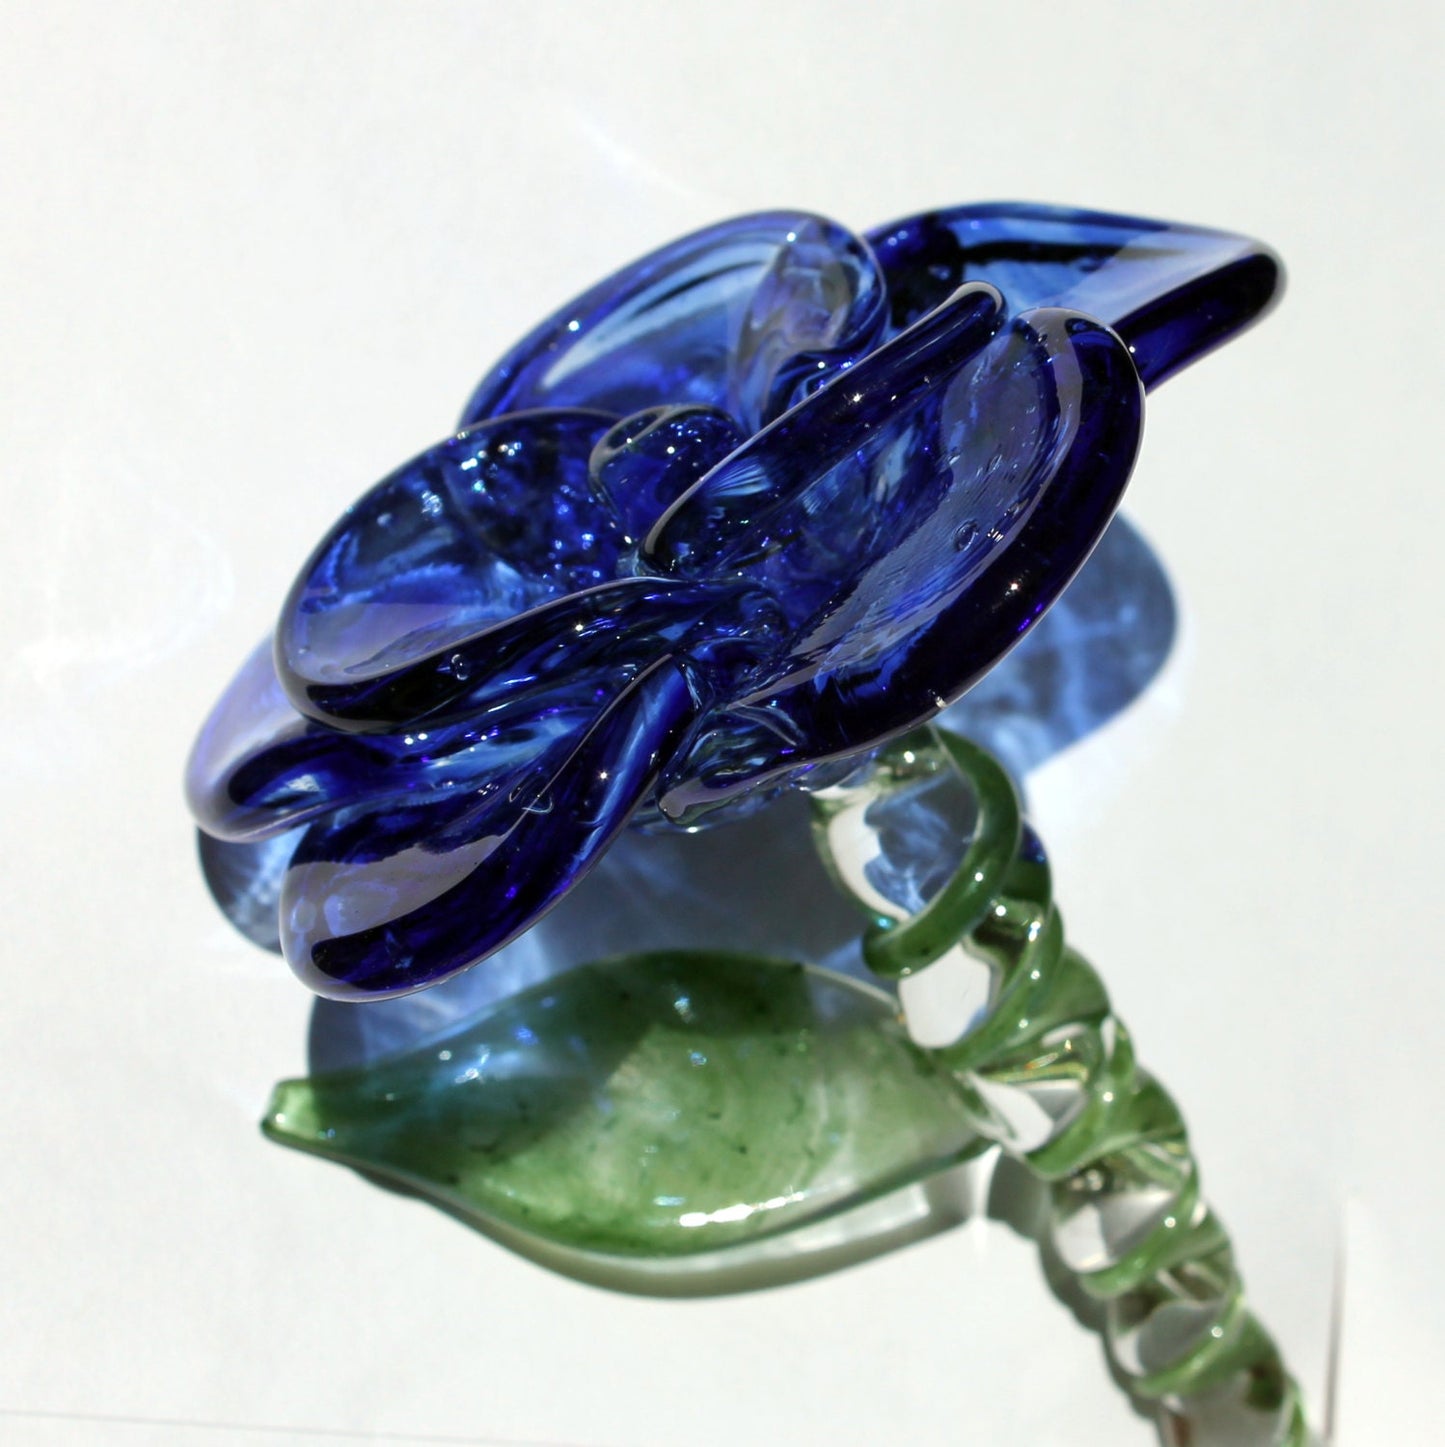 Blue Rose Glass Long Stemmed Rose